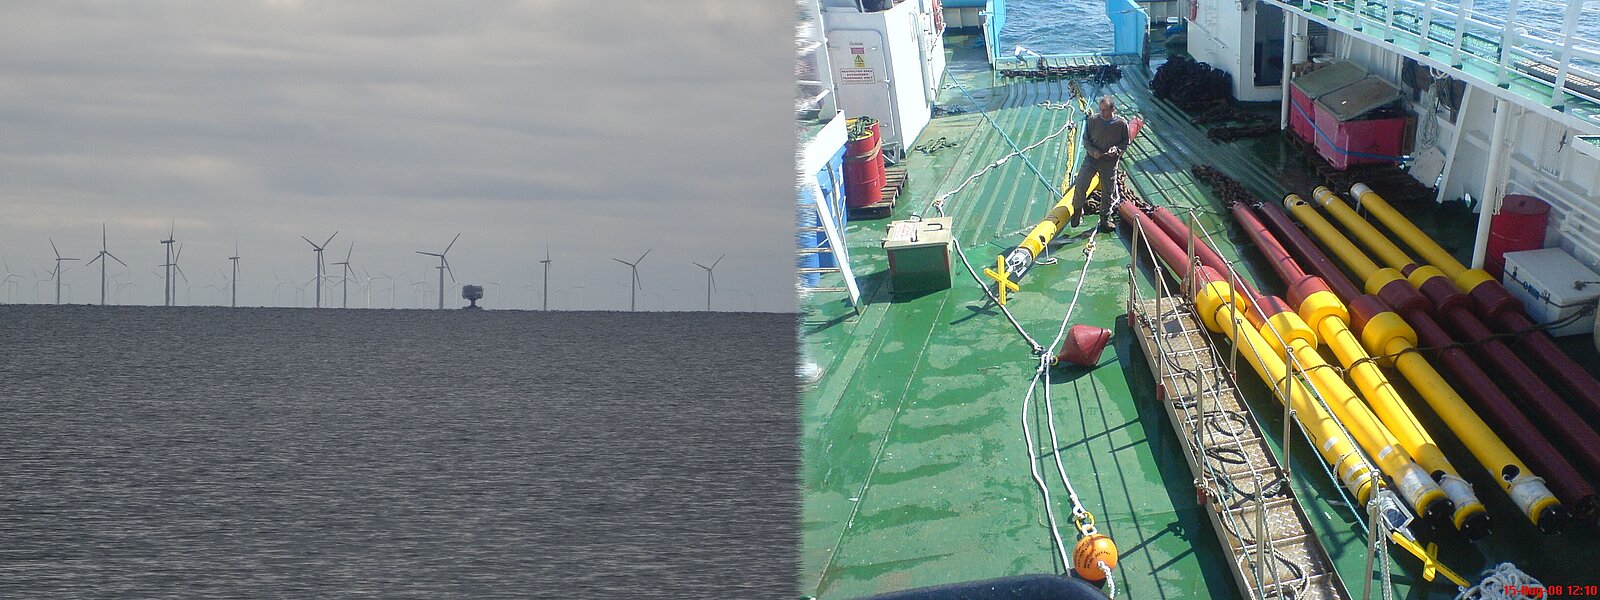 Offshore windpark, Verankerungen von Clickdetektoren auf einem Schiffsdeck